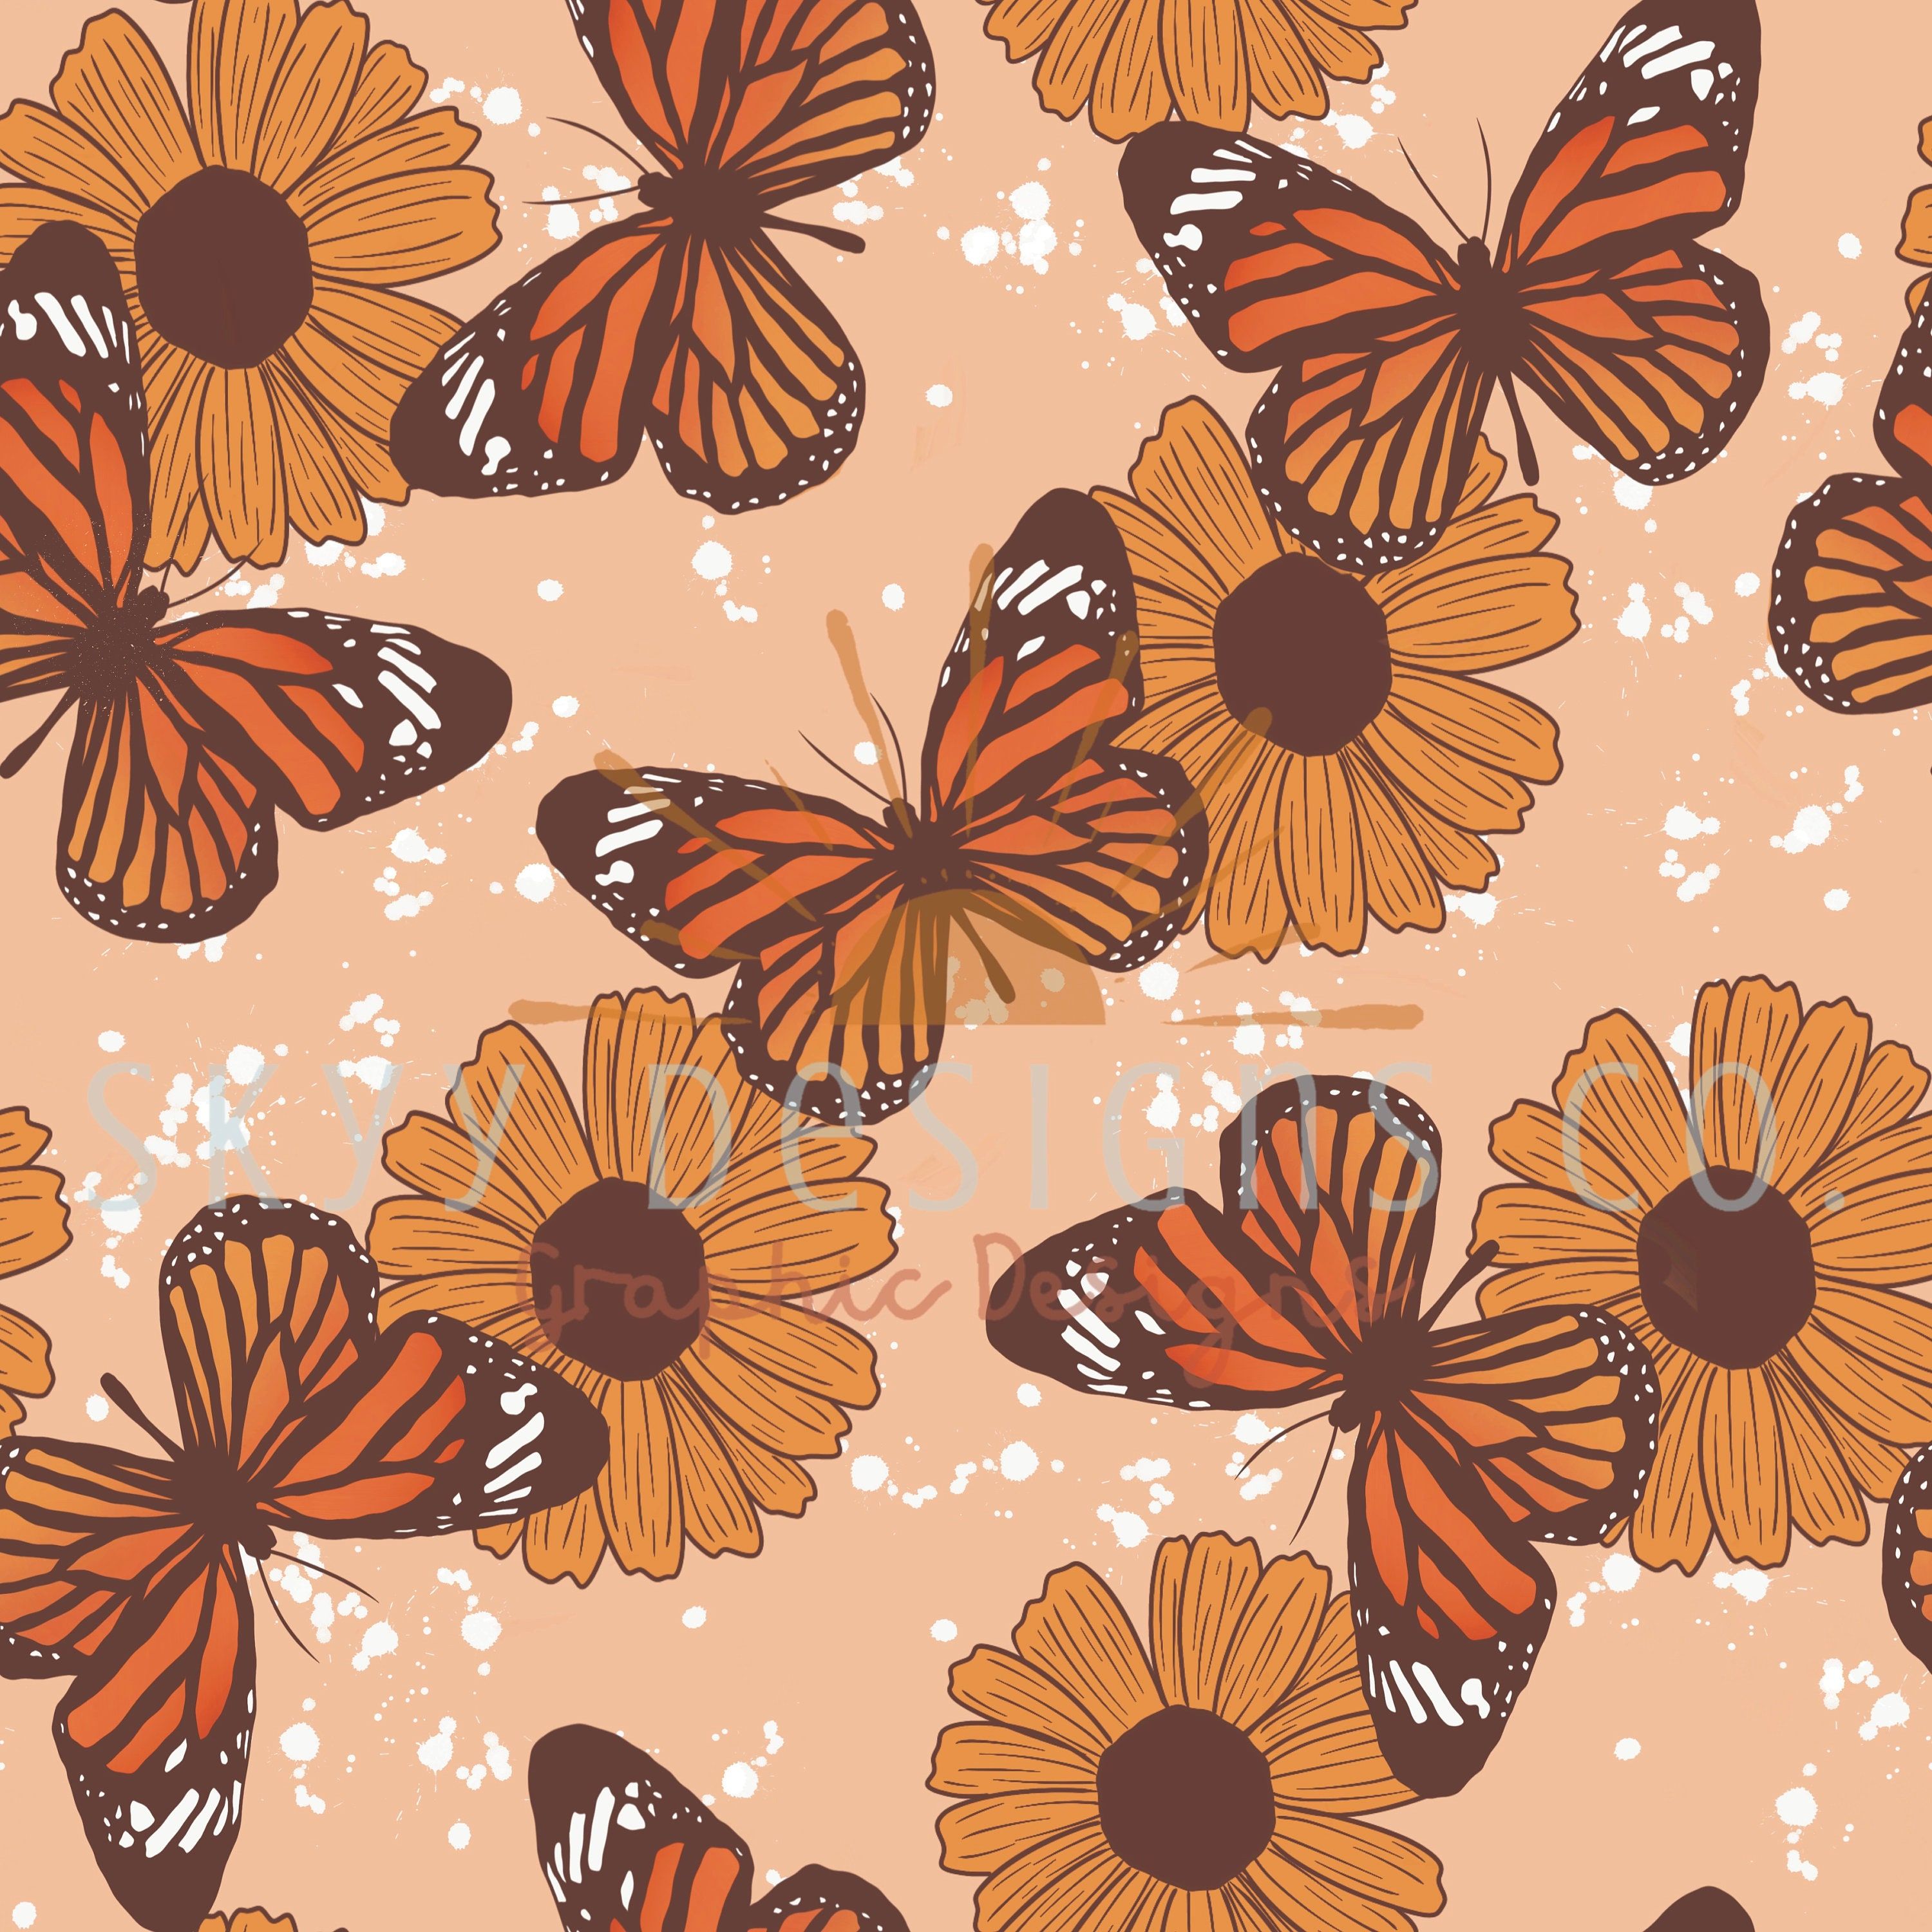 Boho Butterfly Sunflower Digital Seamless Pattern for Fabrics Hong Kong